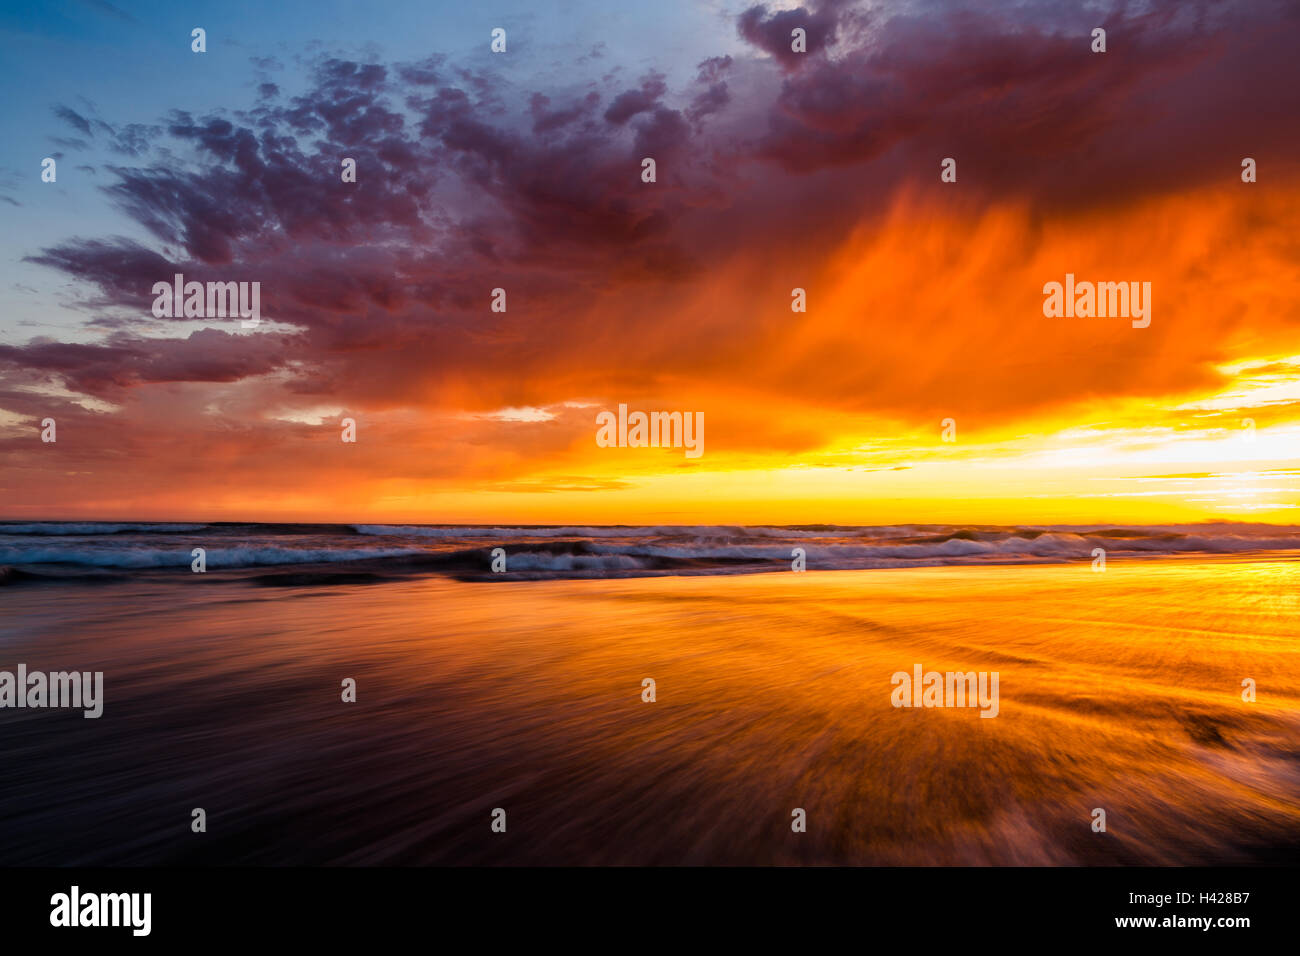 Am Strand in Del Mar, Kalifornien, spiegelt sich der malerische Sonnenuntergang am Himmel im seichten Meerwasser wider Stockfoto